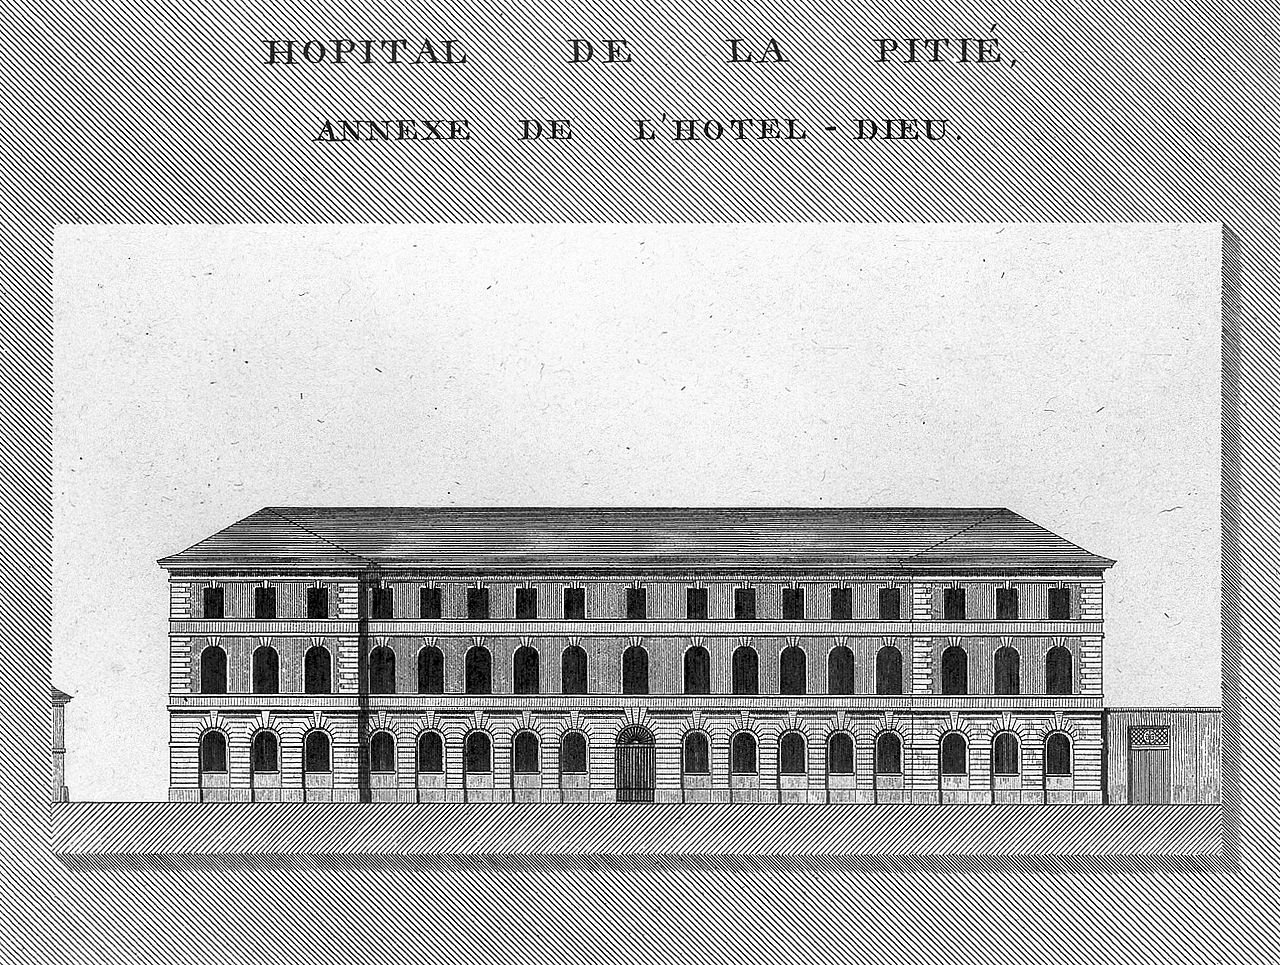 Paris - Hôpital de la Pitié 1280px-H%C3%B4pital_de_la_Piti%C3%A9%2C_Paris%3B_facade_and_floor_plan._Line_engr_Wellcome_L0014921